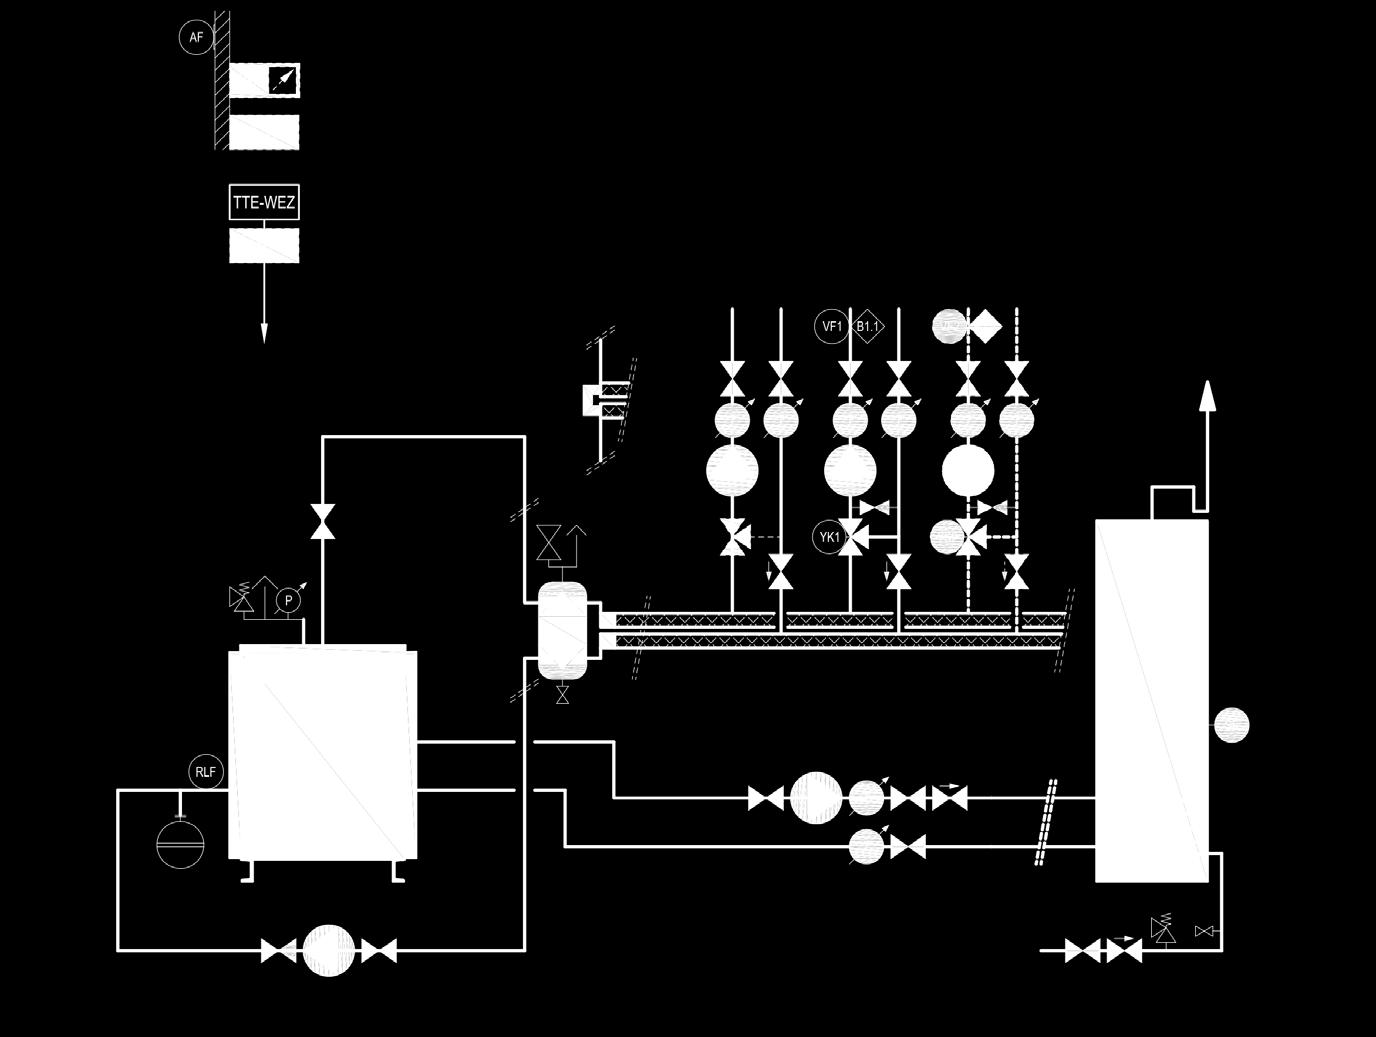 Exemples d utilisation (130-360) Chaudière fioul/gaz avec pompe principale contrôle de la température de retour (agissant sur le circuit du mélangeur) séparation hydraulique chauffe-eau 1 circuit